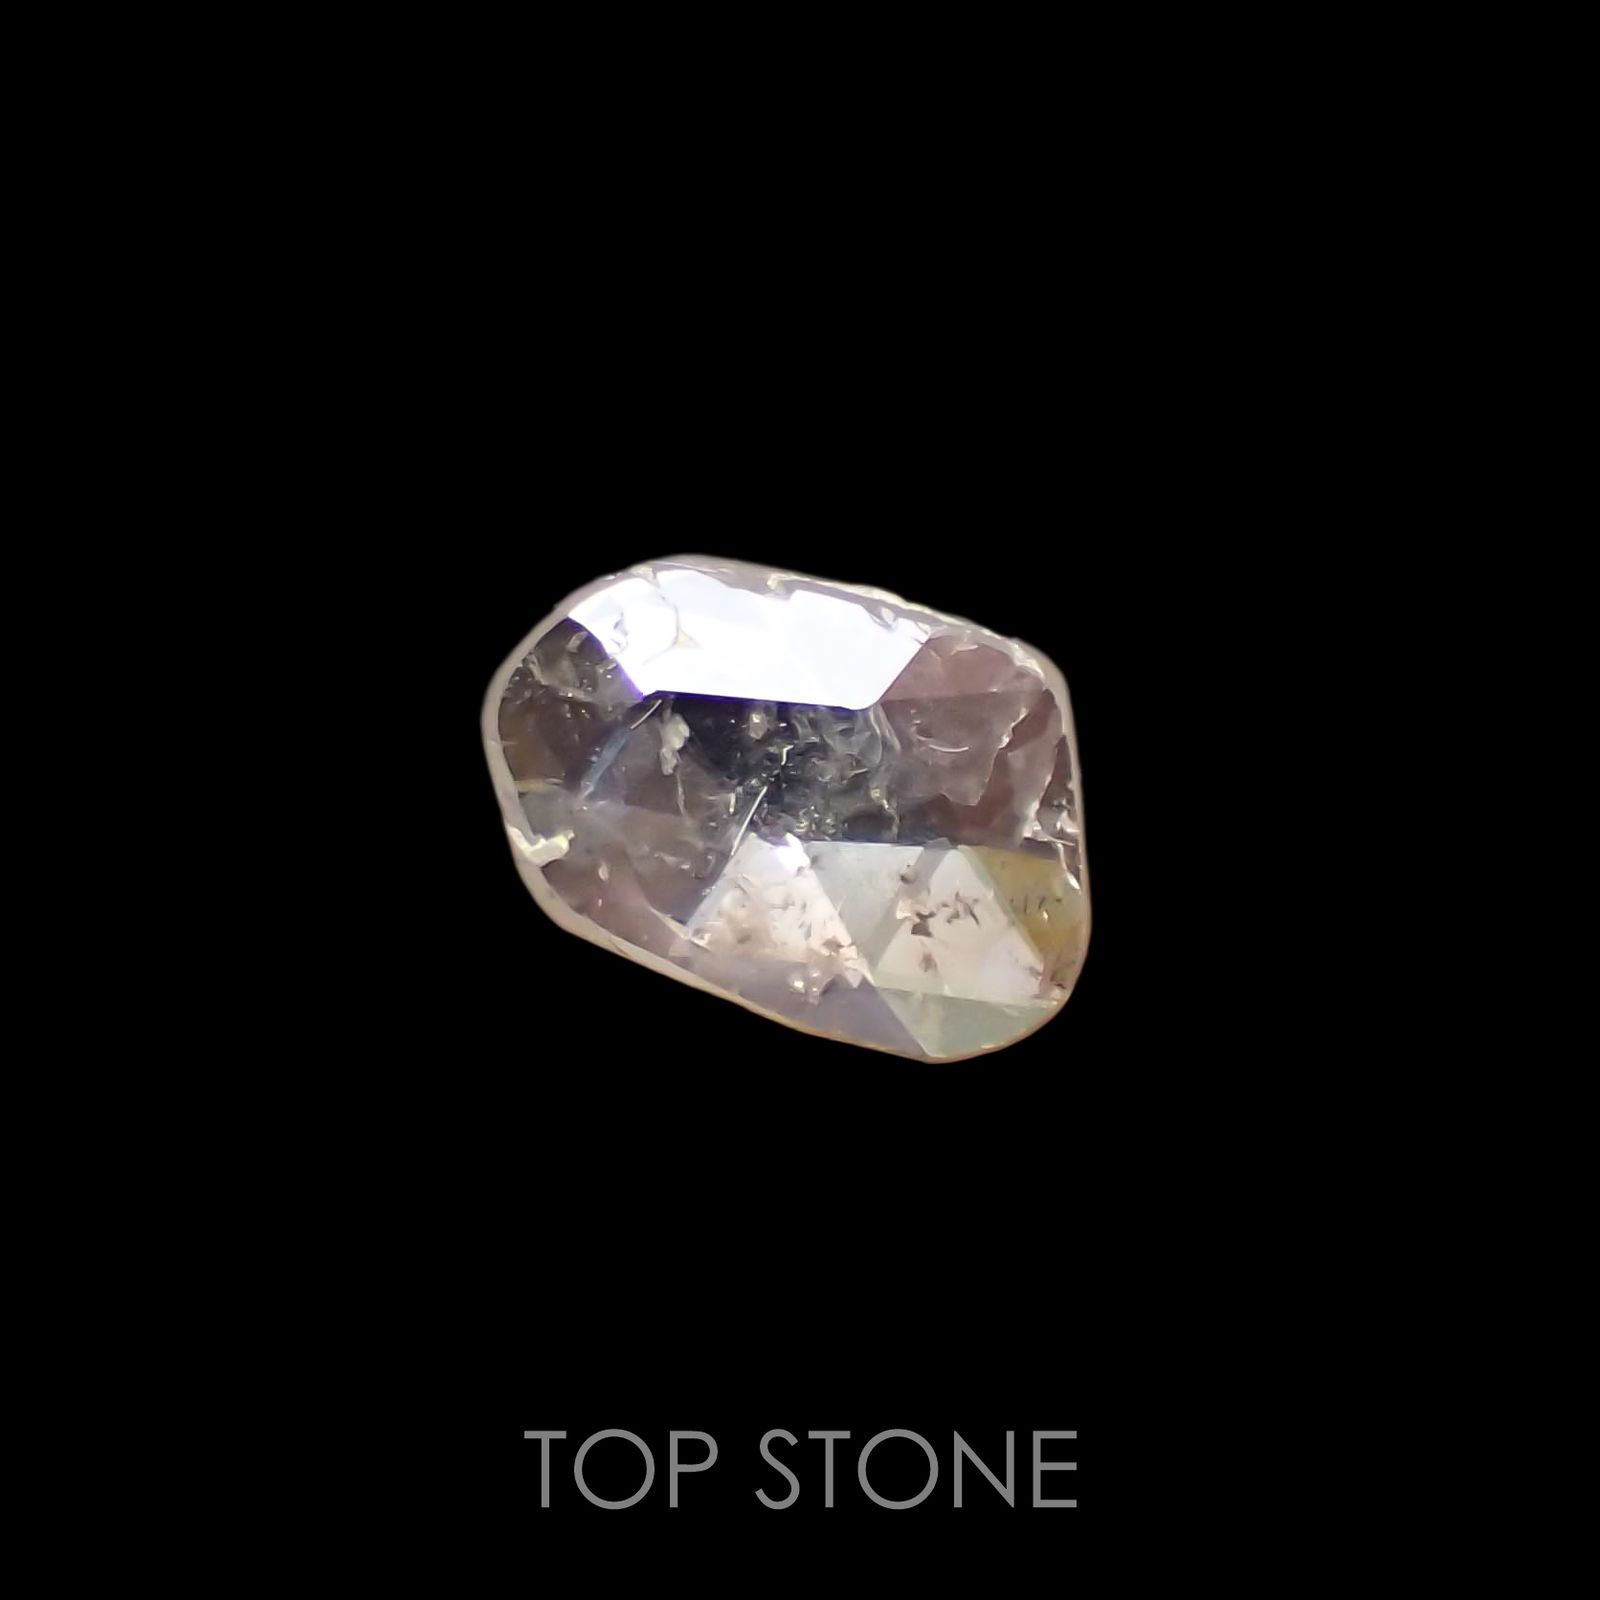 スライスカットダイヤモンド(宝石名ダイアモンド) 原石・結晶 0.467 